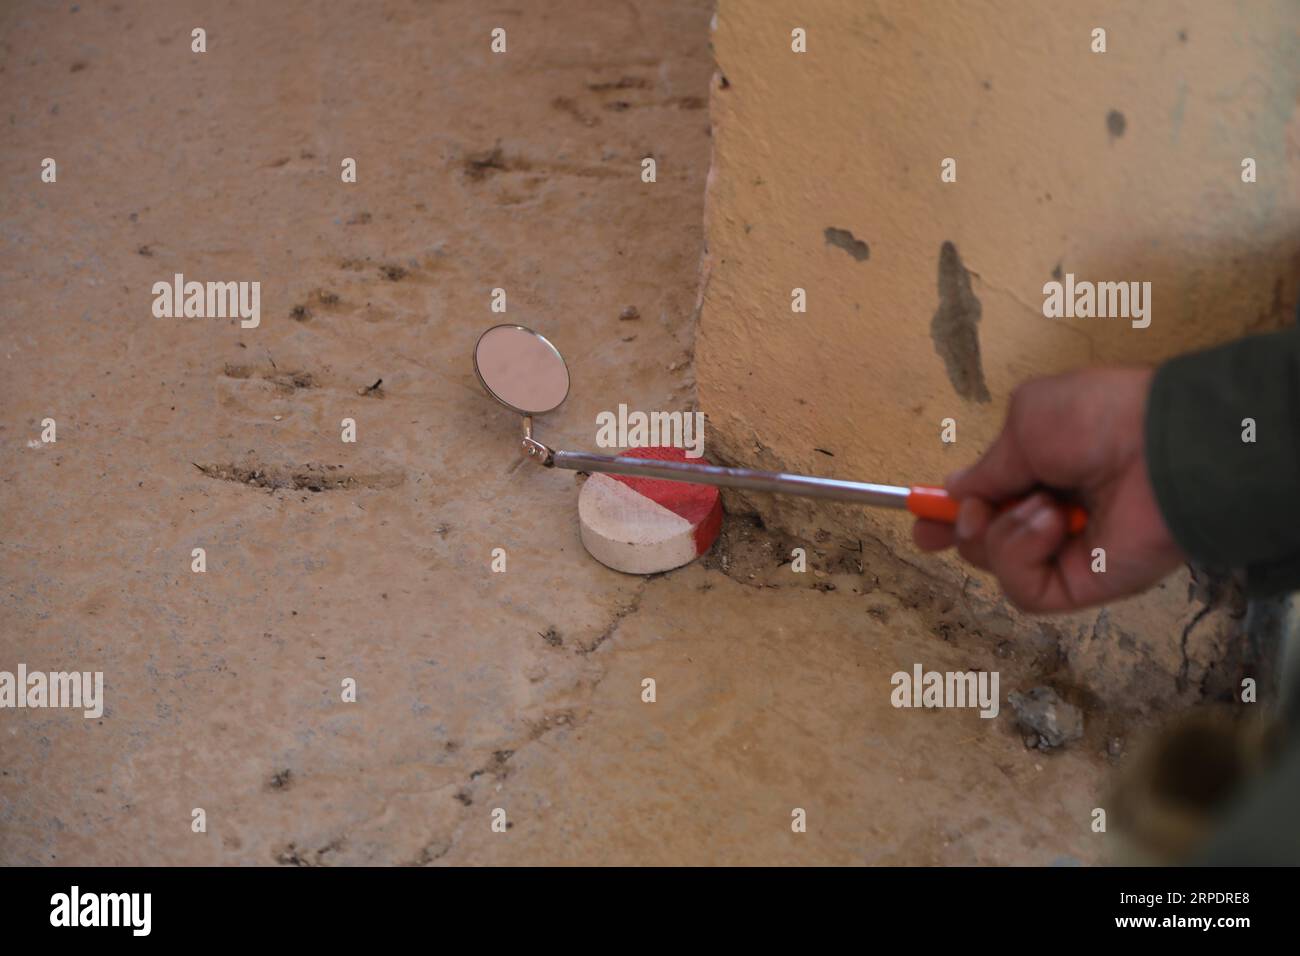 (190810) -- SINJAR (IRAK), 10 août 2019 (Xinhua) -- une photo prise le 4 juillet 2019 montre un chercheur explorant les angles morts avec un miroir pour dégager les dangers explosifs d'une école aux abords de Sinjar, en Irak. Après cinq ans d’atrocités massives commises contre la minorité yézidie par des militants de l’État islamique (EI) dans la région du Sinjar, les restes explosifs de la guerre anti-EI constituent toujours une menace pour la vie des civils dans la région. (Xinhua/Khalil Dawood) POUR ALLER AVEC : 5 ans après les atrocités DE L'EI, de jeunes Yézidis font équipe pour éliminer les dangers explosifs dans le nord de l'Irak Irak IRAQ-SINJAR-YÉZIDI ÉQUIPE-PUB DE DÉMINAGE Banque D'Images